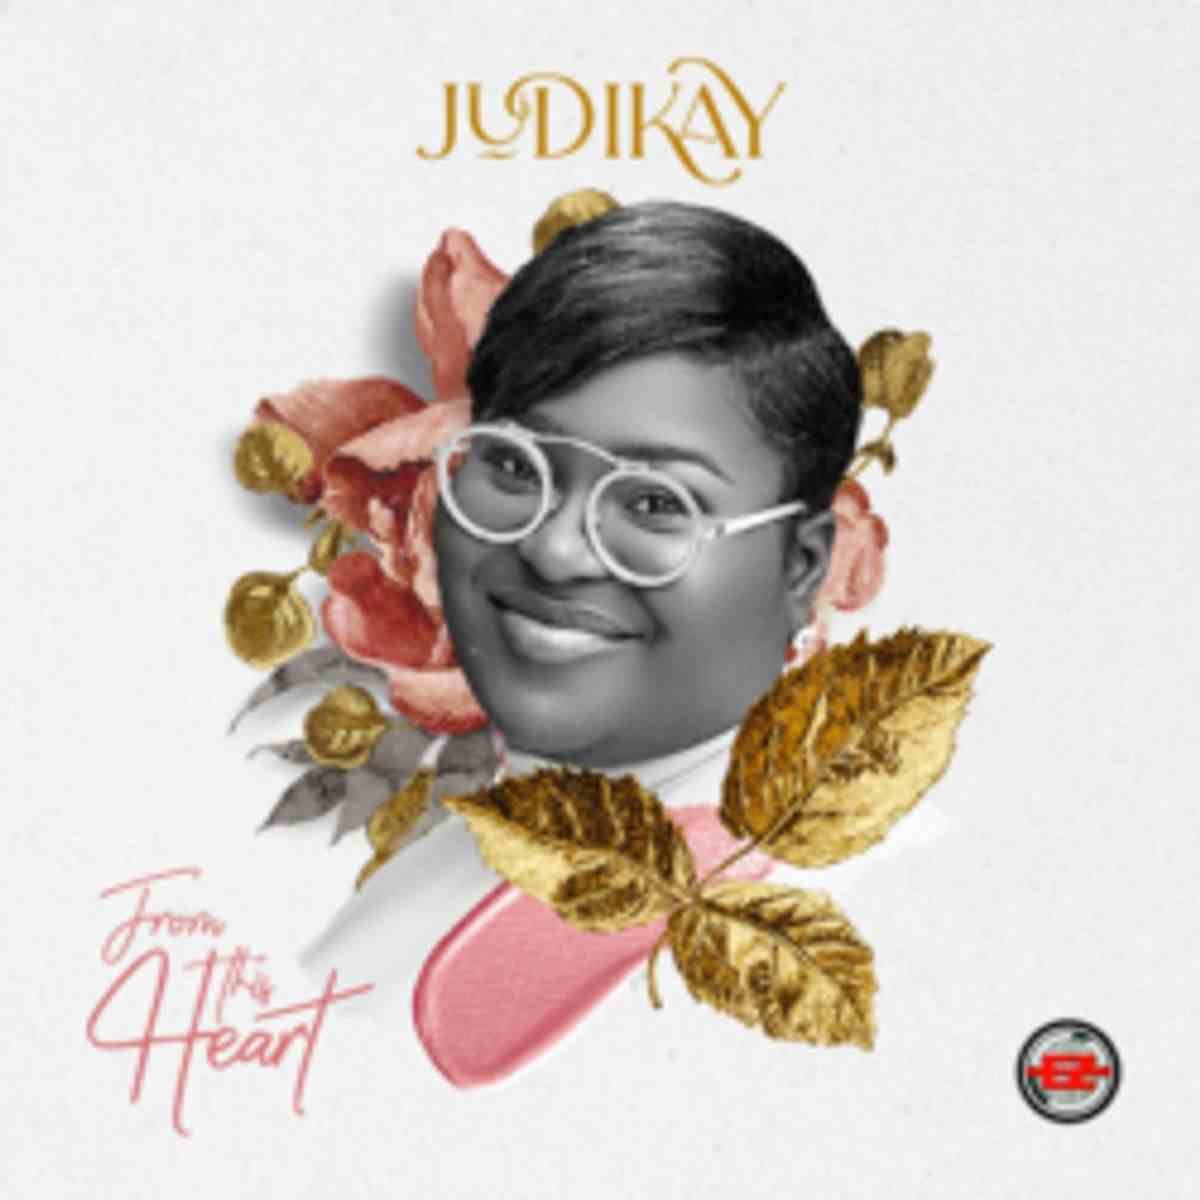 Judikay – From This Heart